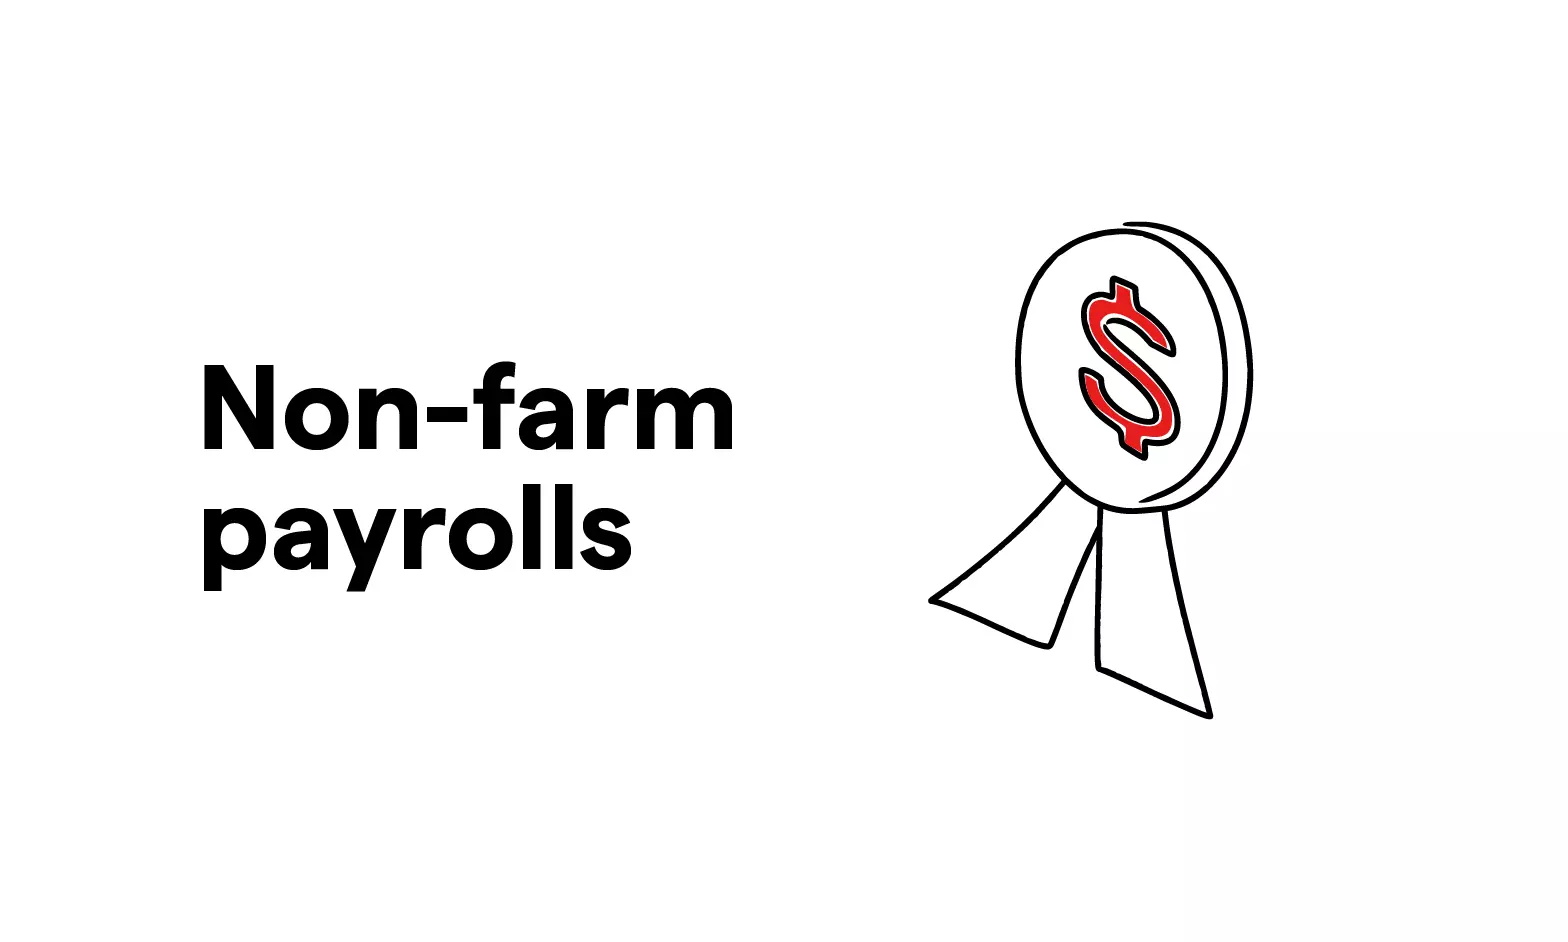 Non-farm payrolls